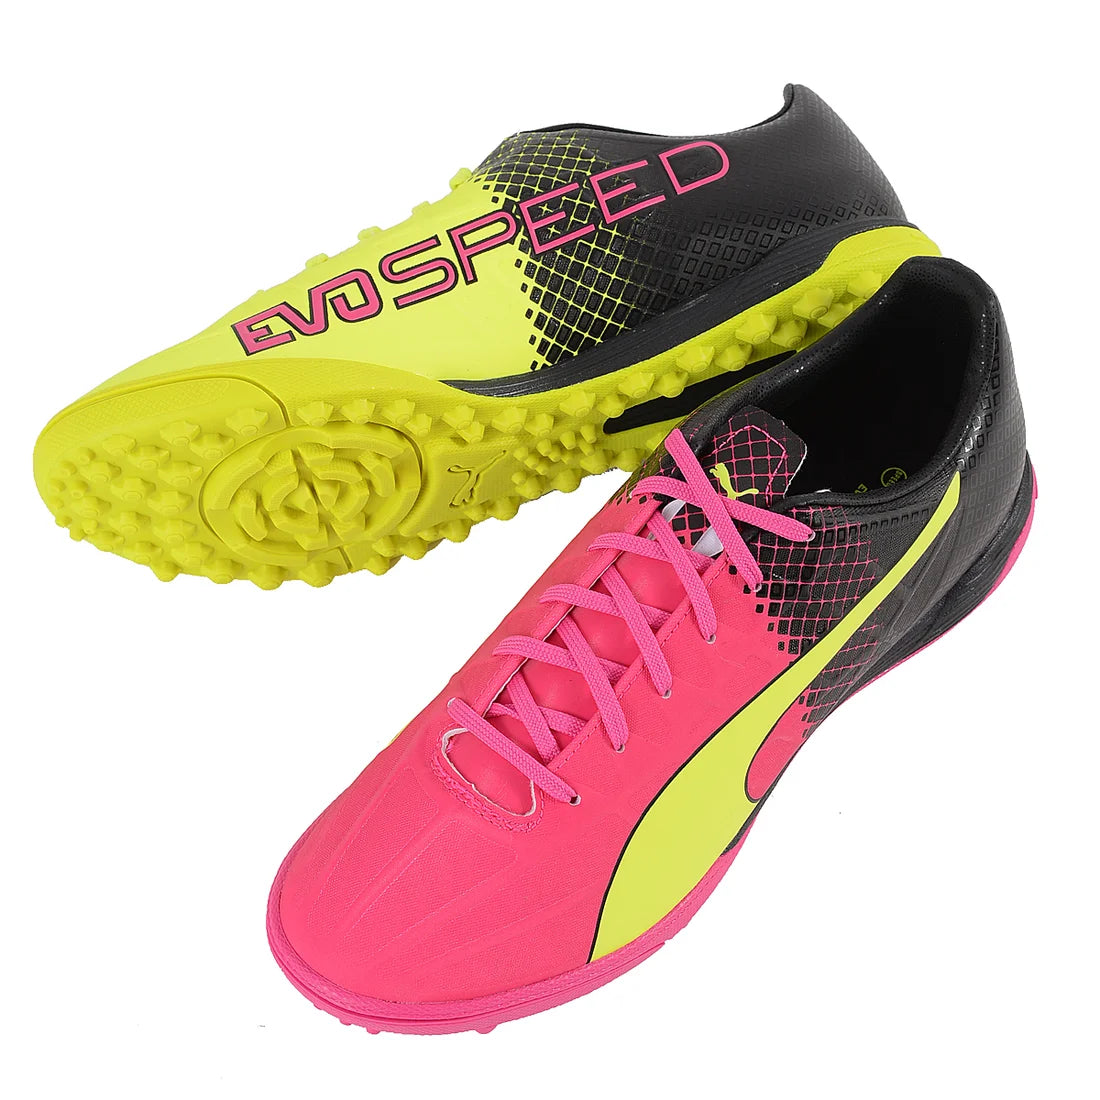 Puma Evospeed 4.5 Tricks TT Turf Football Boots Pink